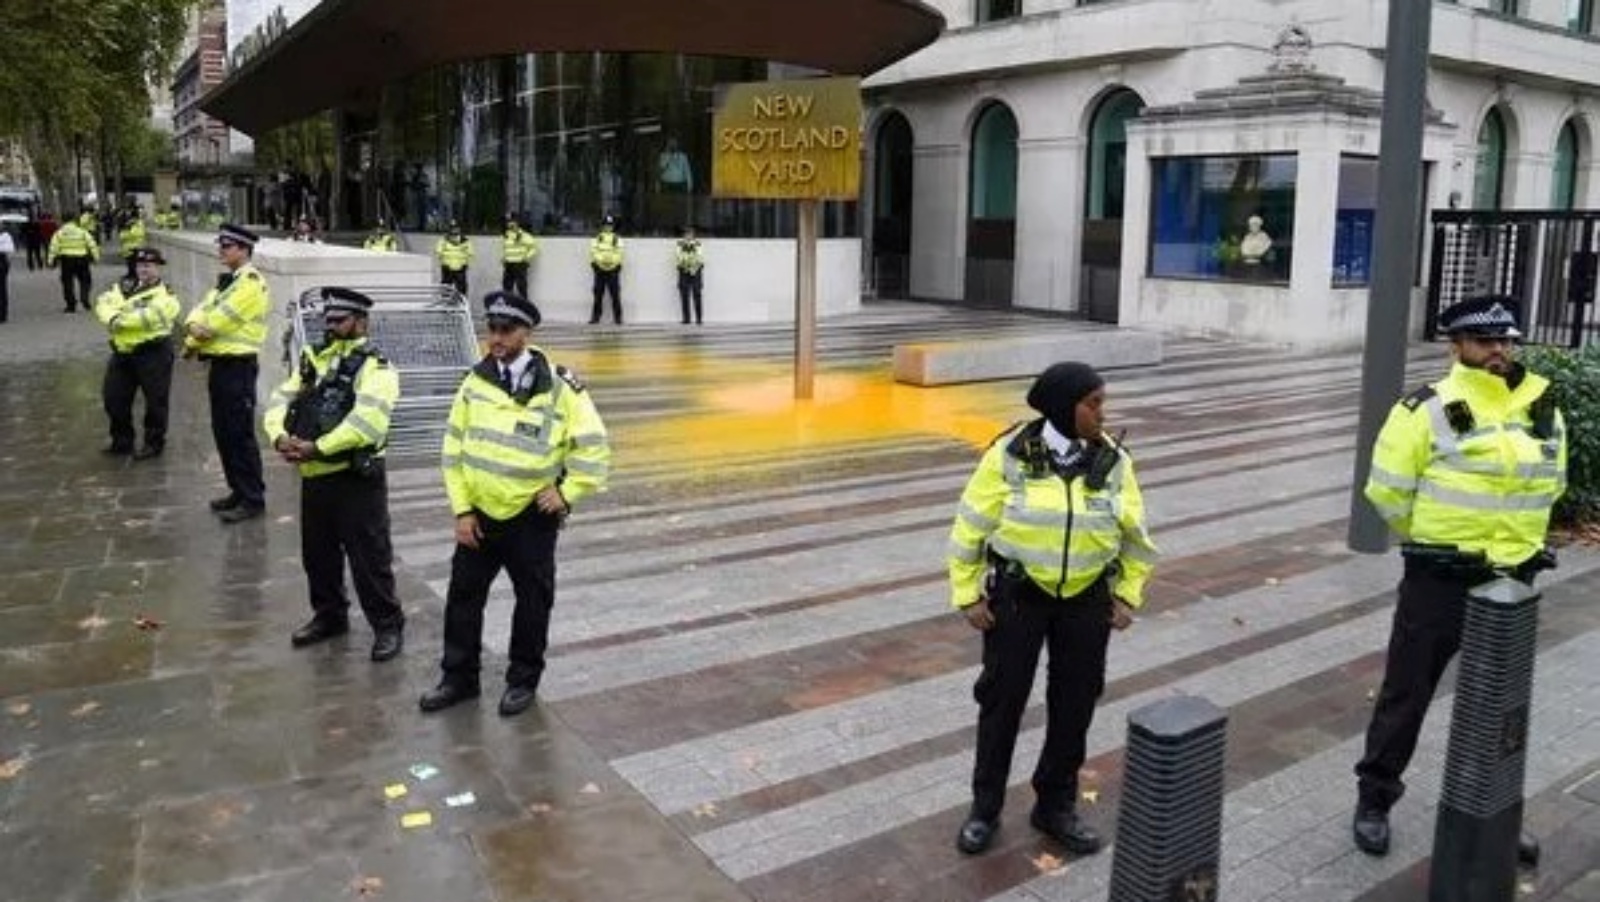 عدد من أفراد الشرطة أمام مبنى قيادة سكوتلانديارد في لندن